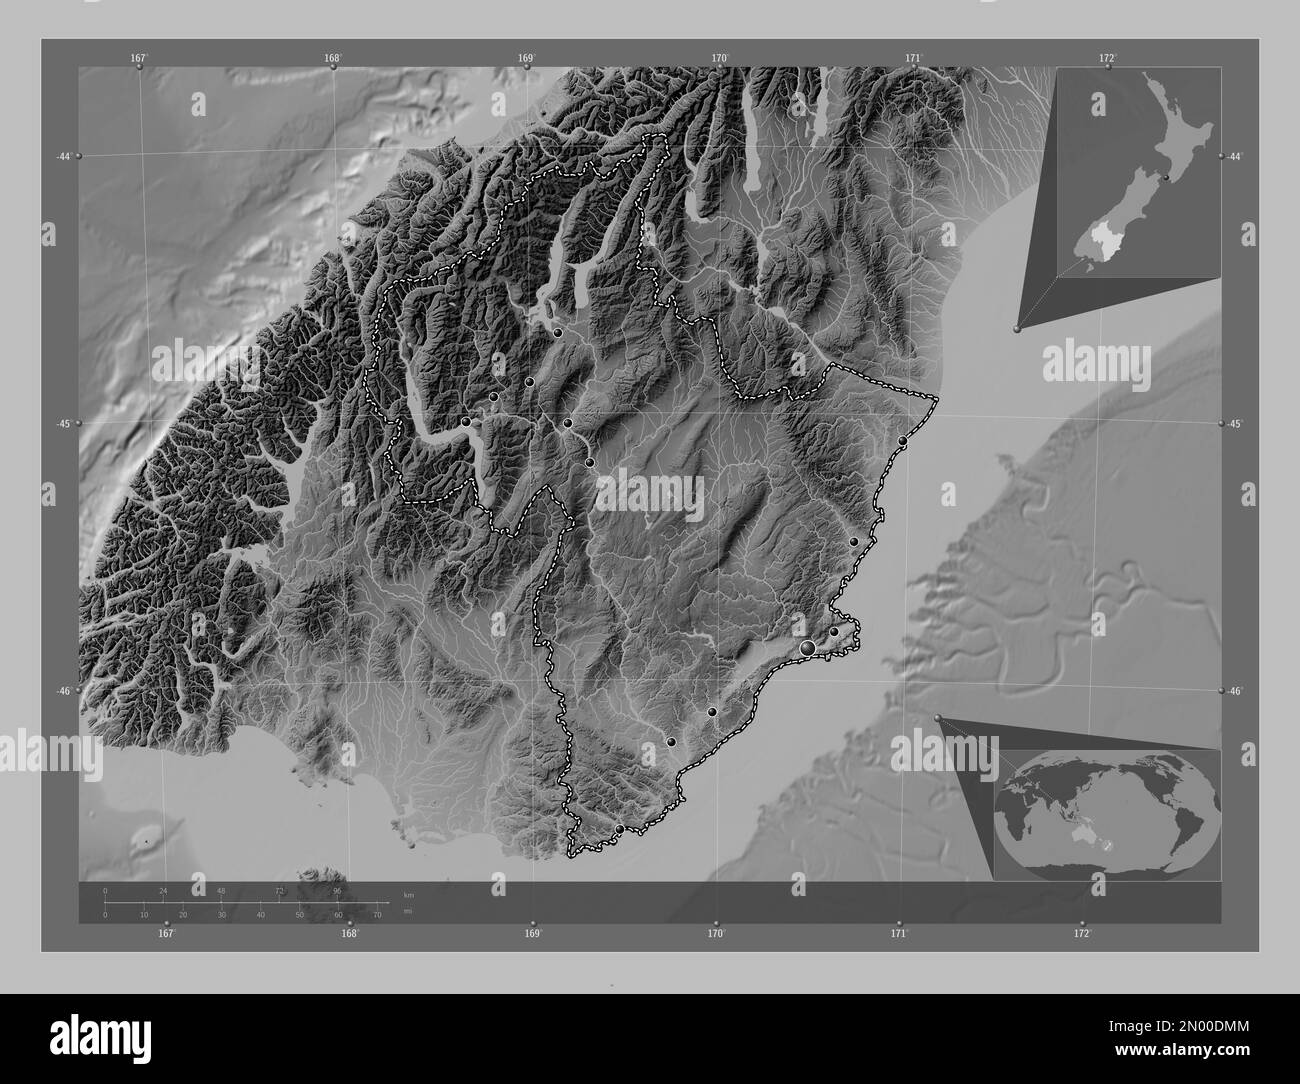 Otago, conseil régional de Nouvelle-Zélande. Carte d'altitude en niveaux de gris avec lacs et rivières. Lieux des principales villes de la région. Emplacement auxiliaire d'angle Banque D'Images